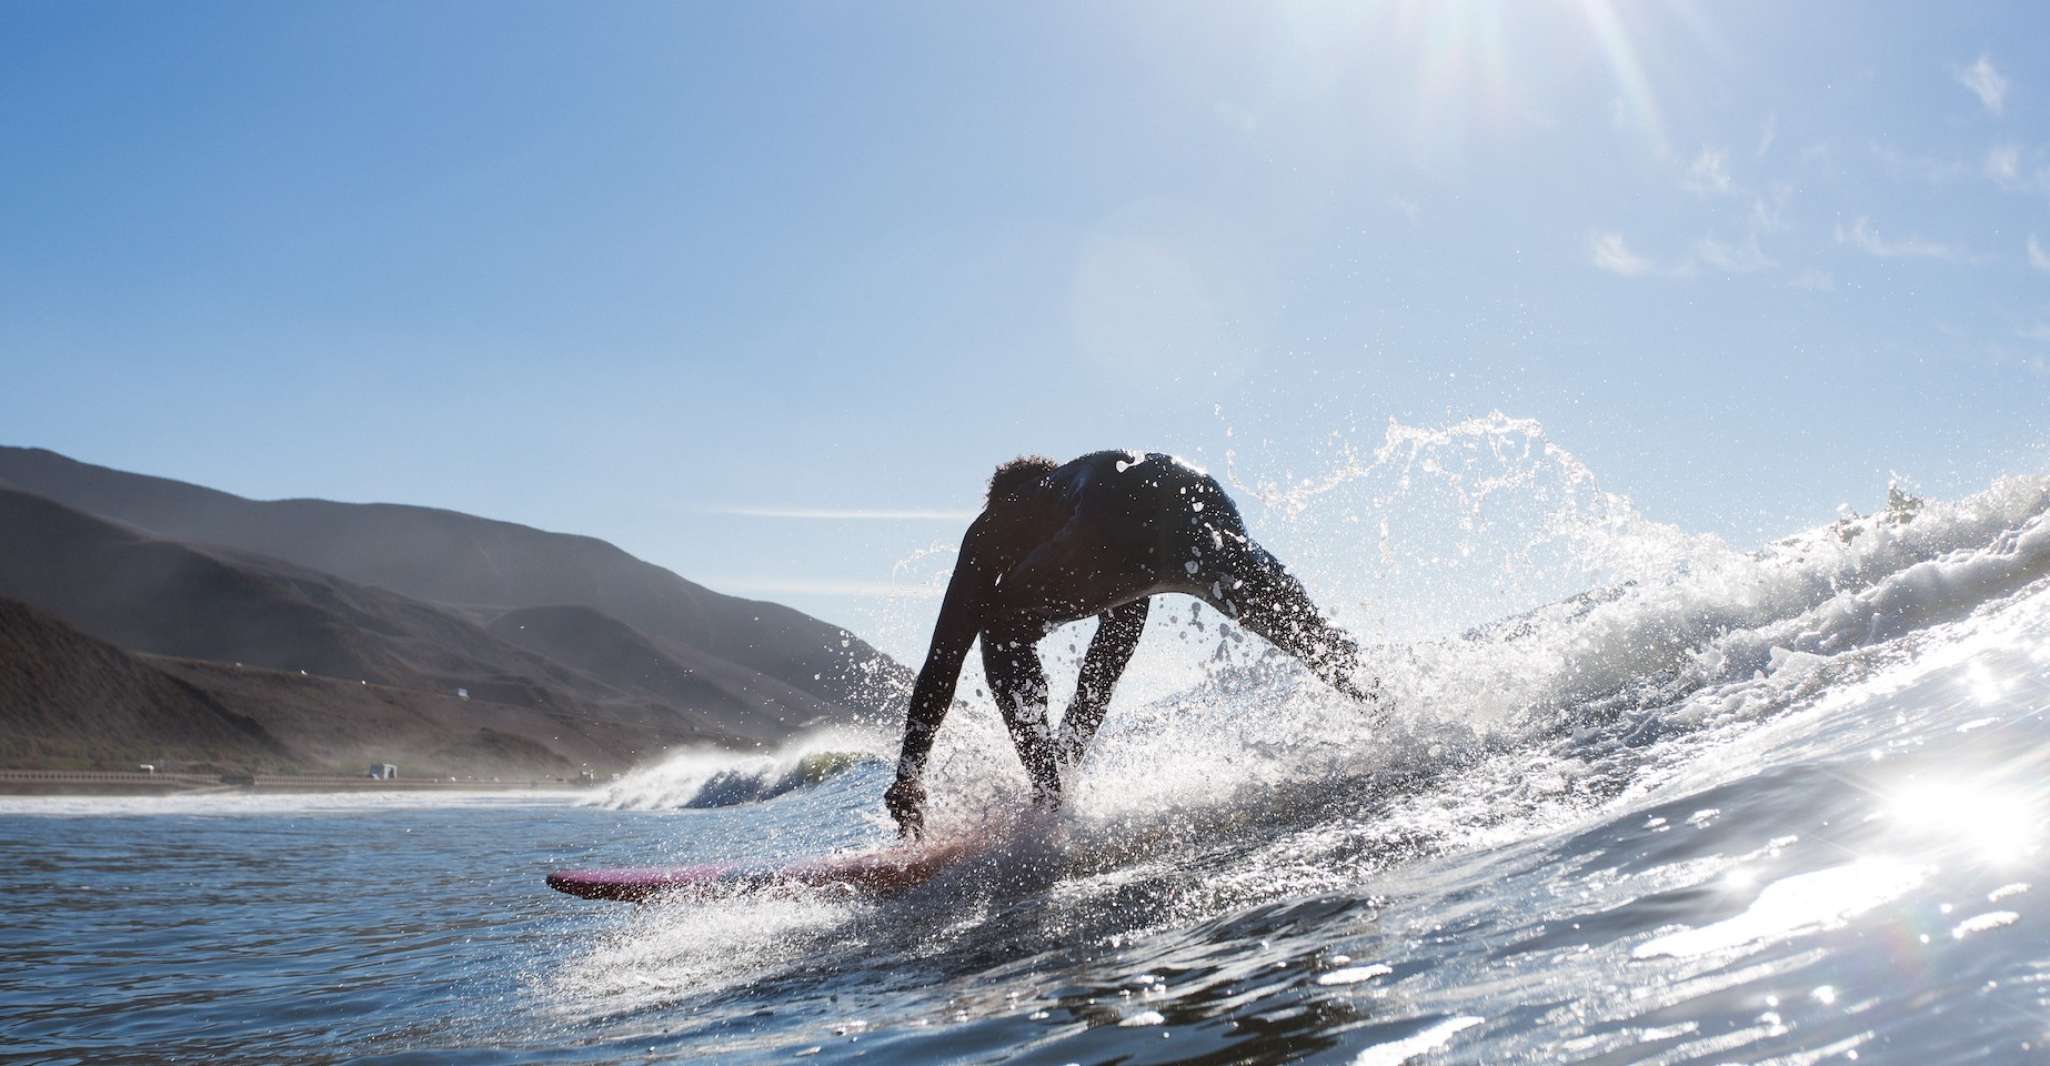 Ventura, 1.5-Hour Private Beginner's Surf Lesson - Housity